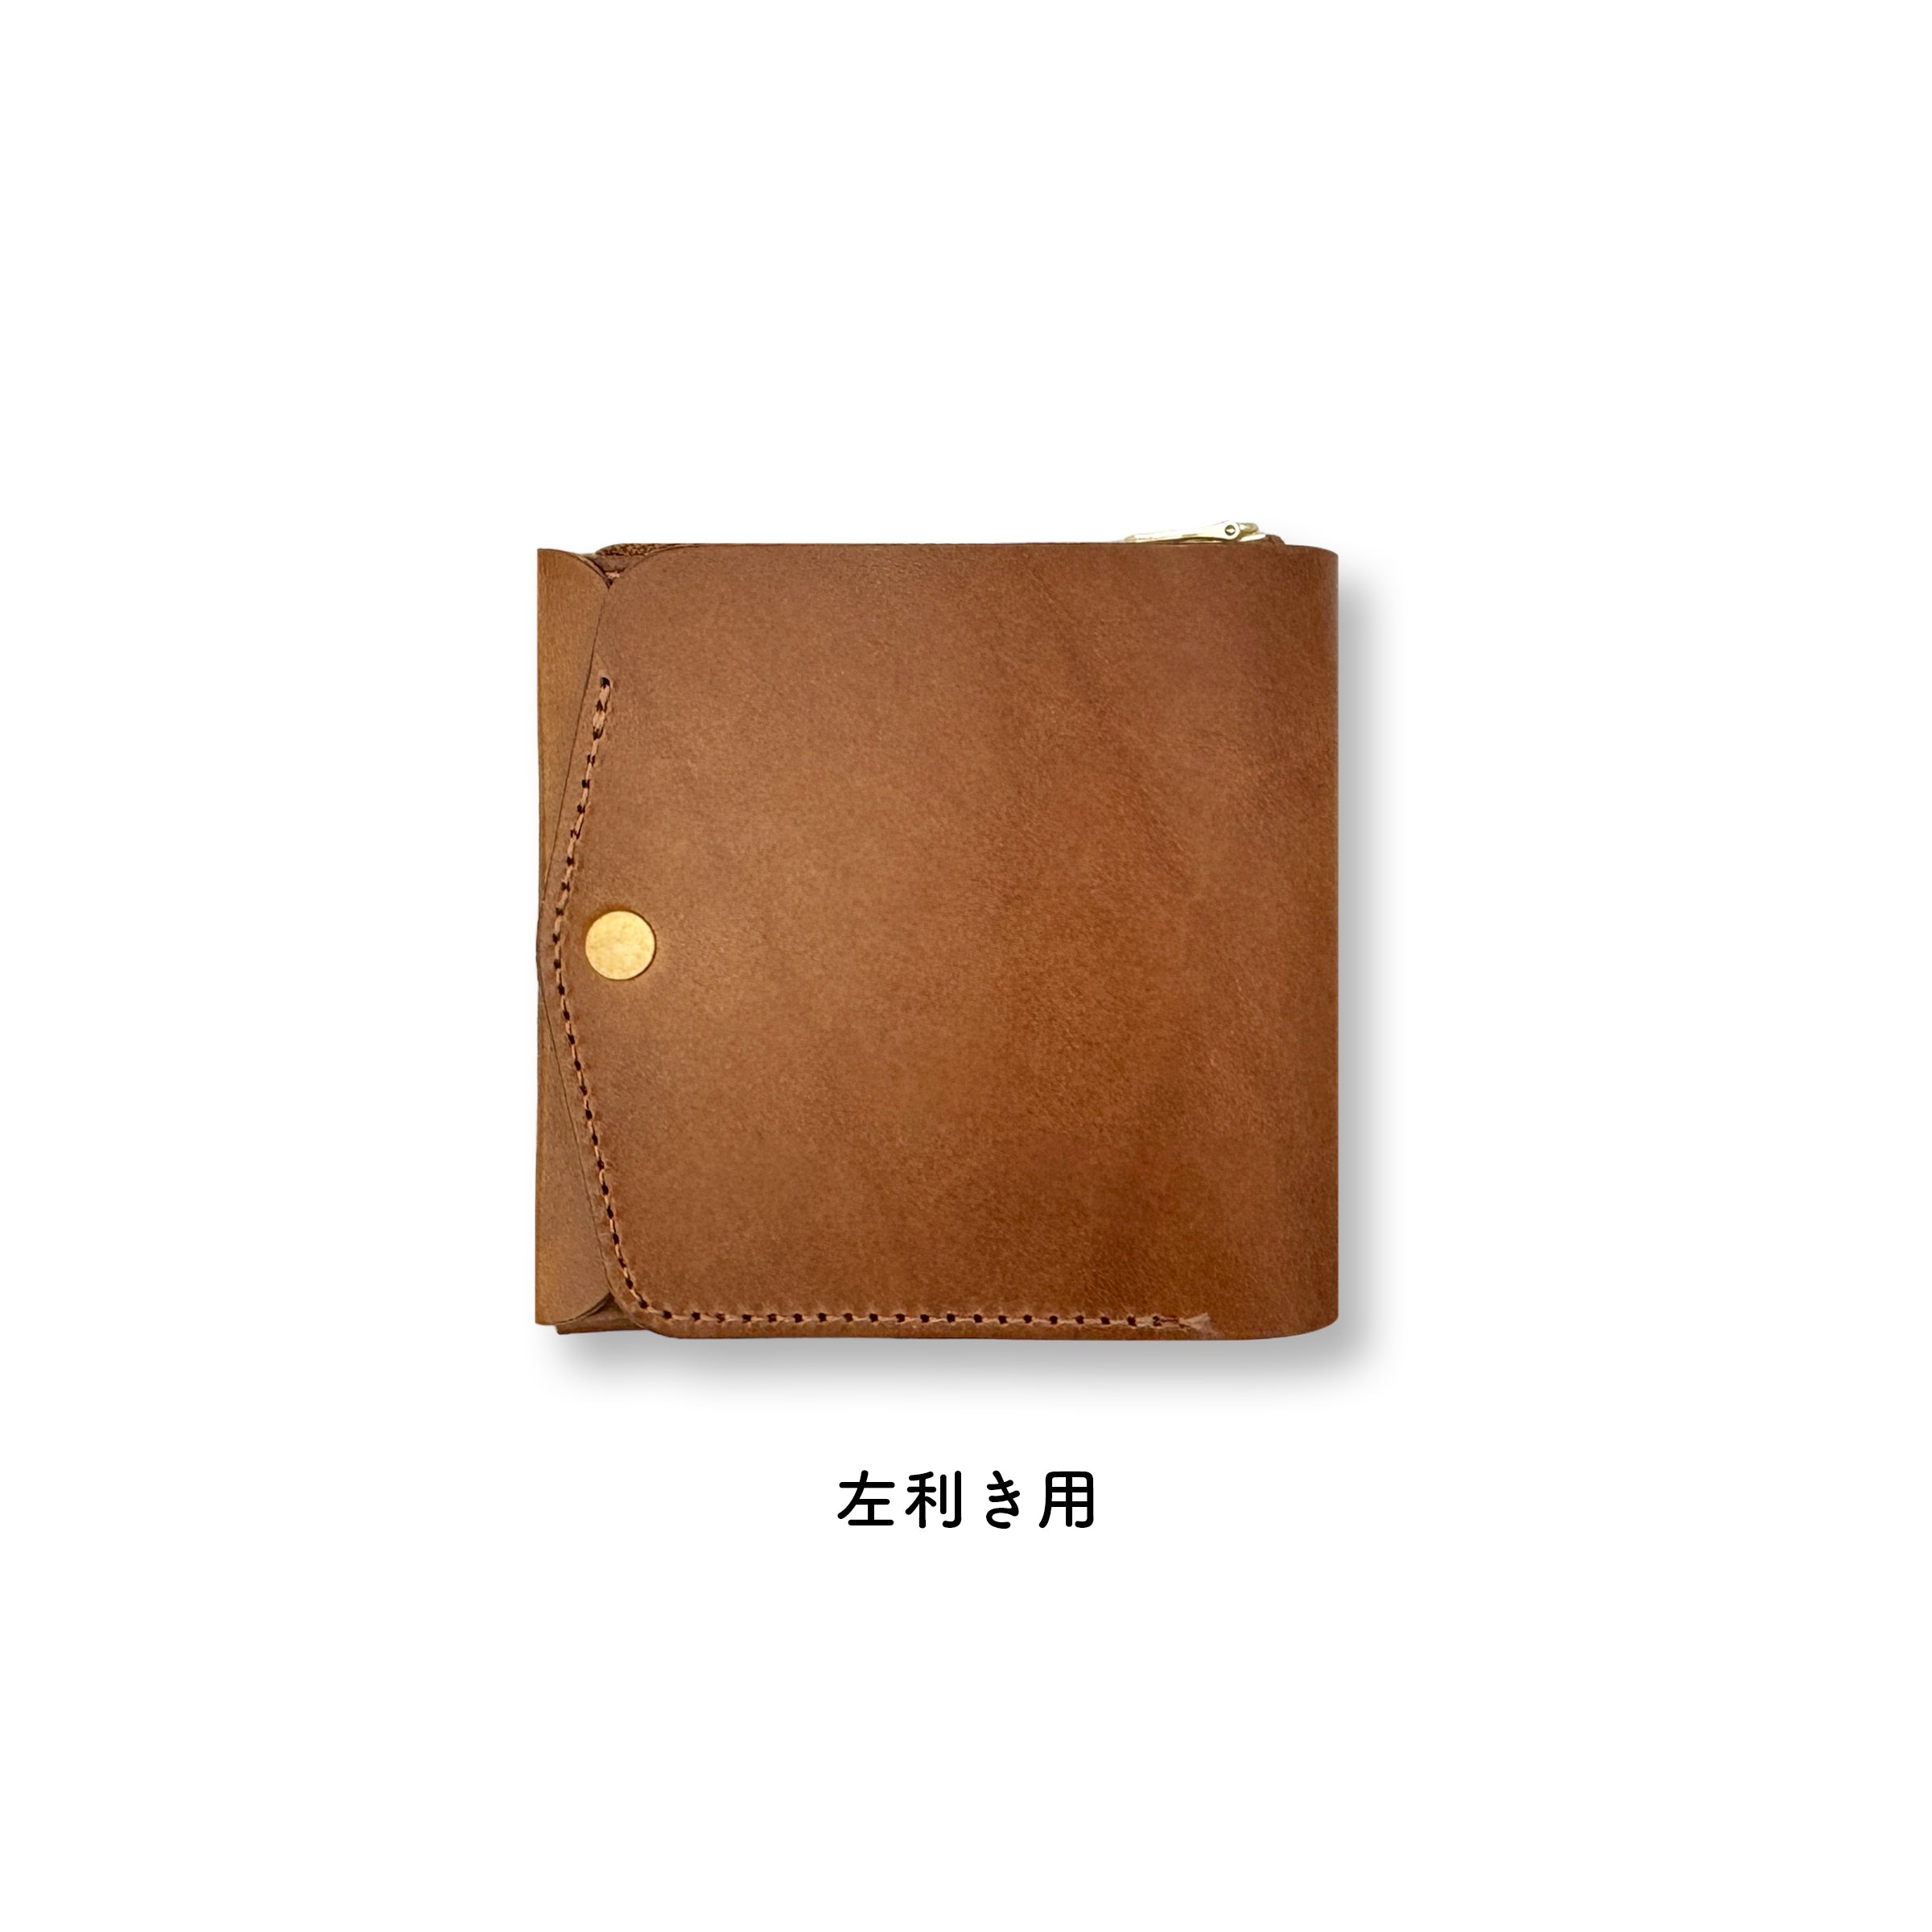 薄い財布 メンズ・レディース/小さく薄い財布Saku ver.3 Buttero